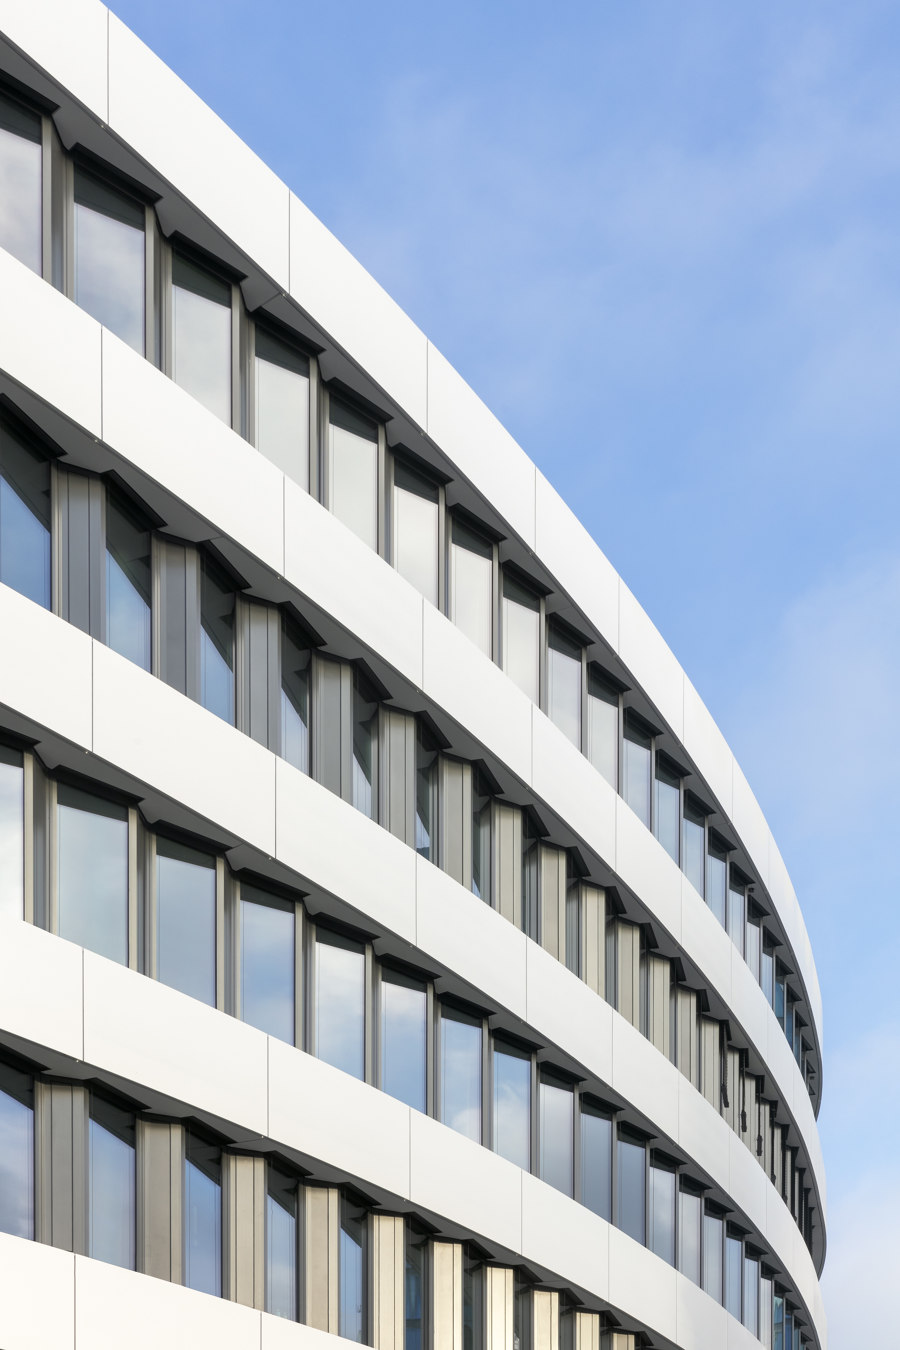 trivago Headquarter, Düsseldorf de slapa oberholz pszczulny | sop architekten | Edificio de Oficinas